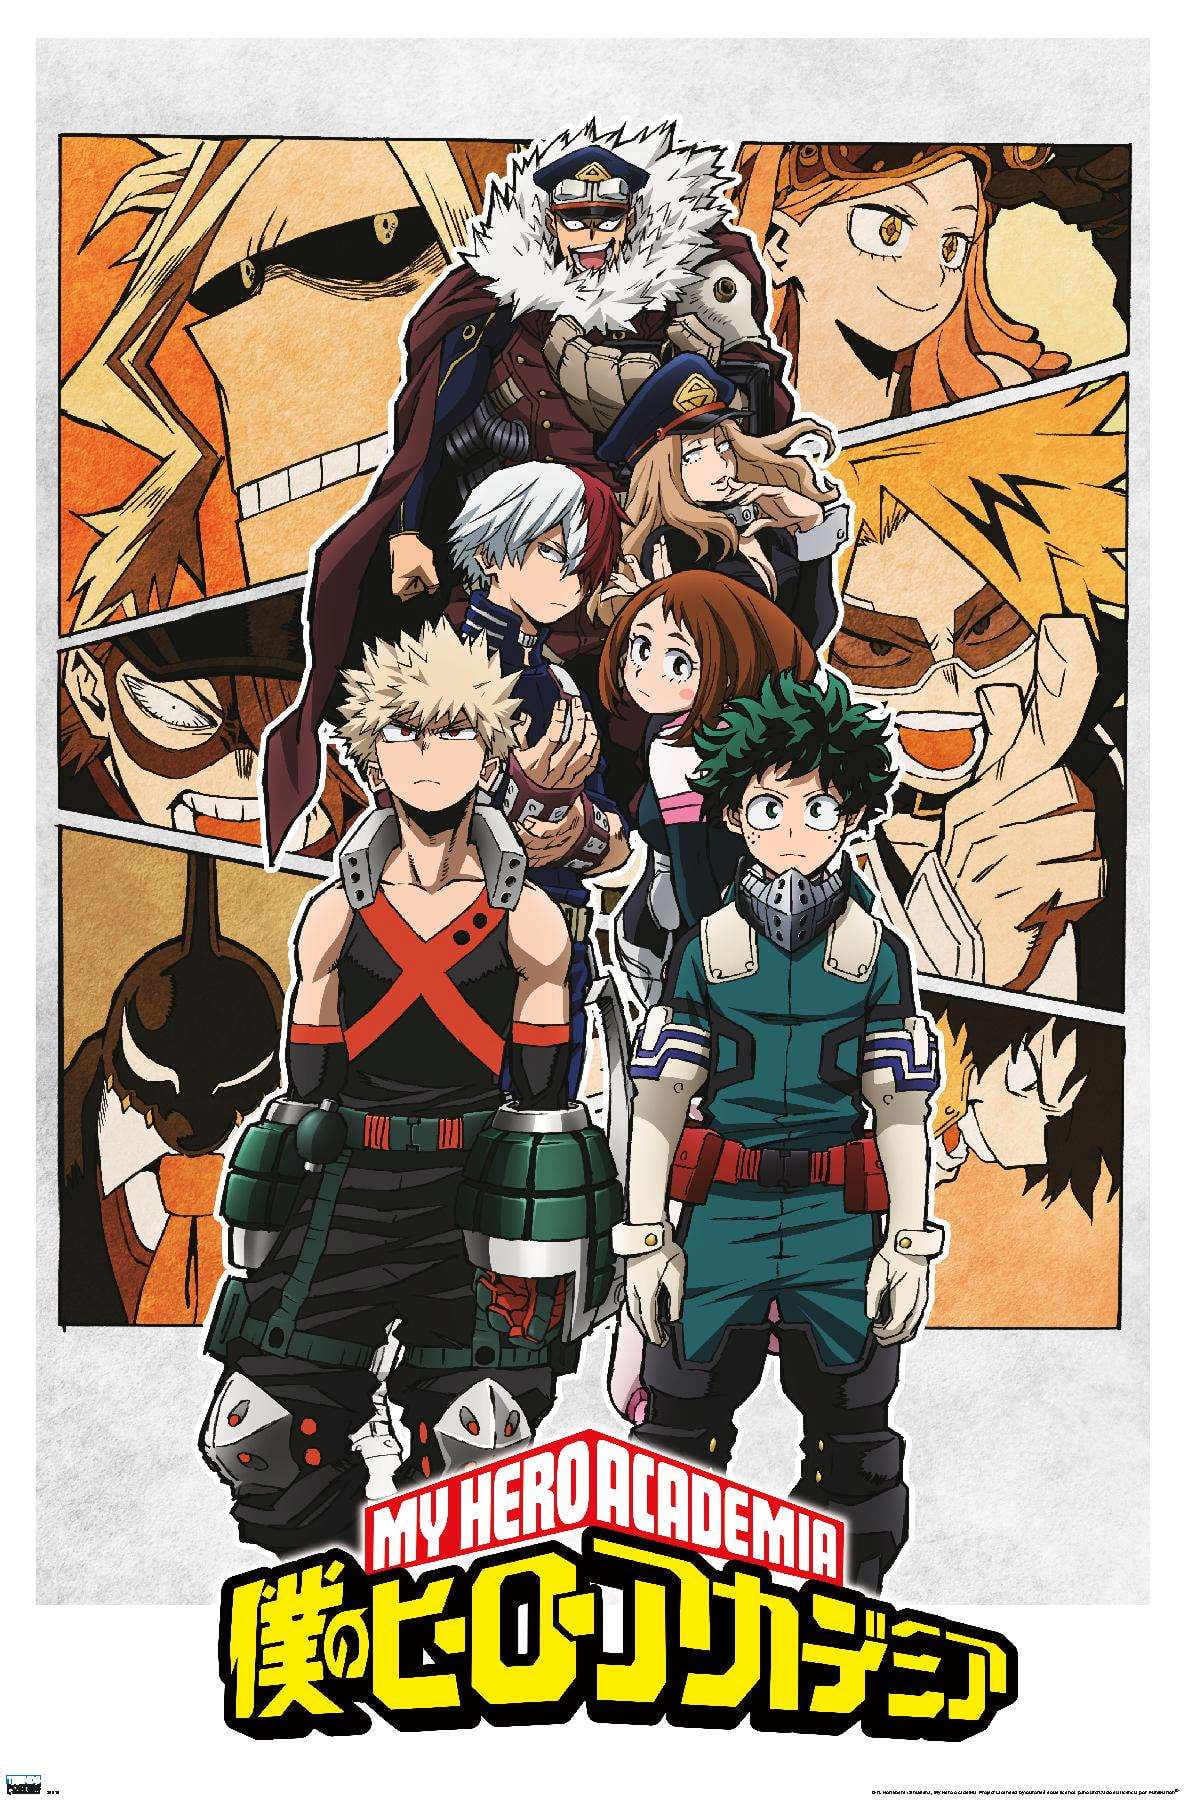 Hero Academia Midoriya Anime 24" x 16" Large Wall Poster Art Print Gift Decor 